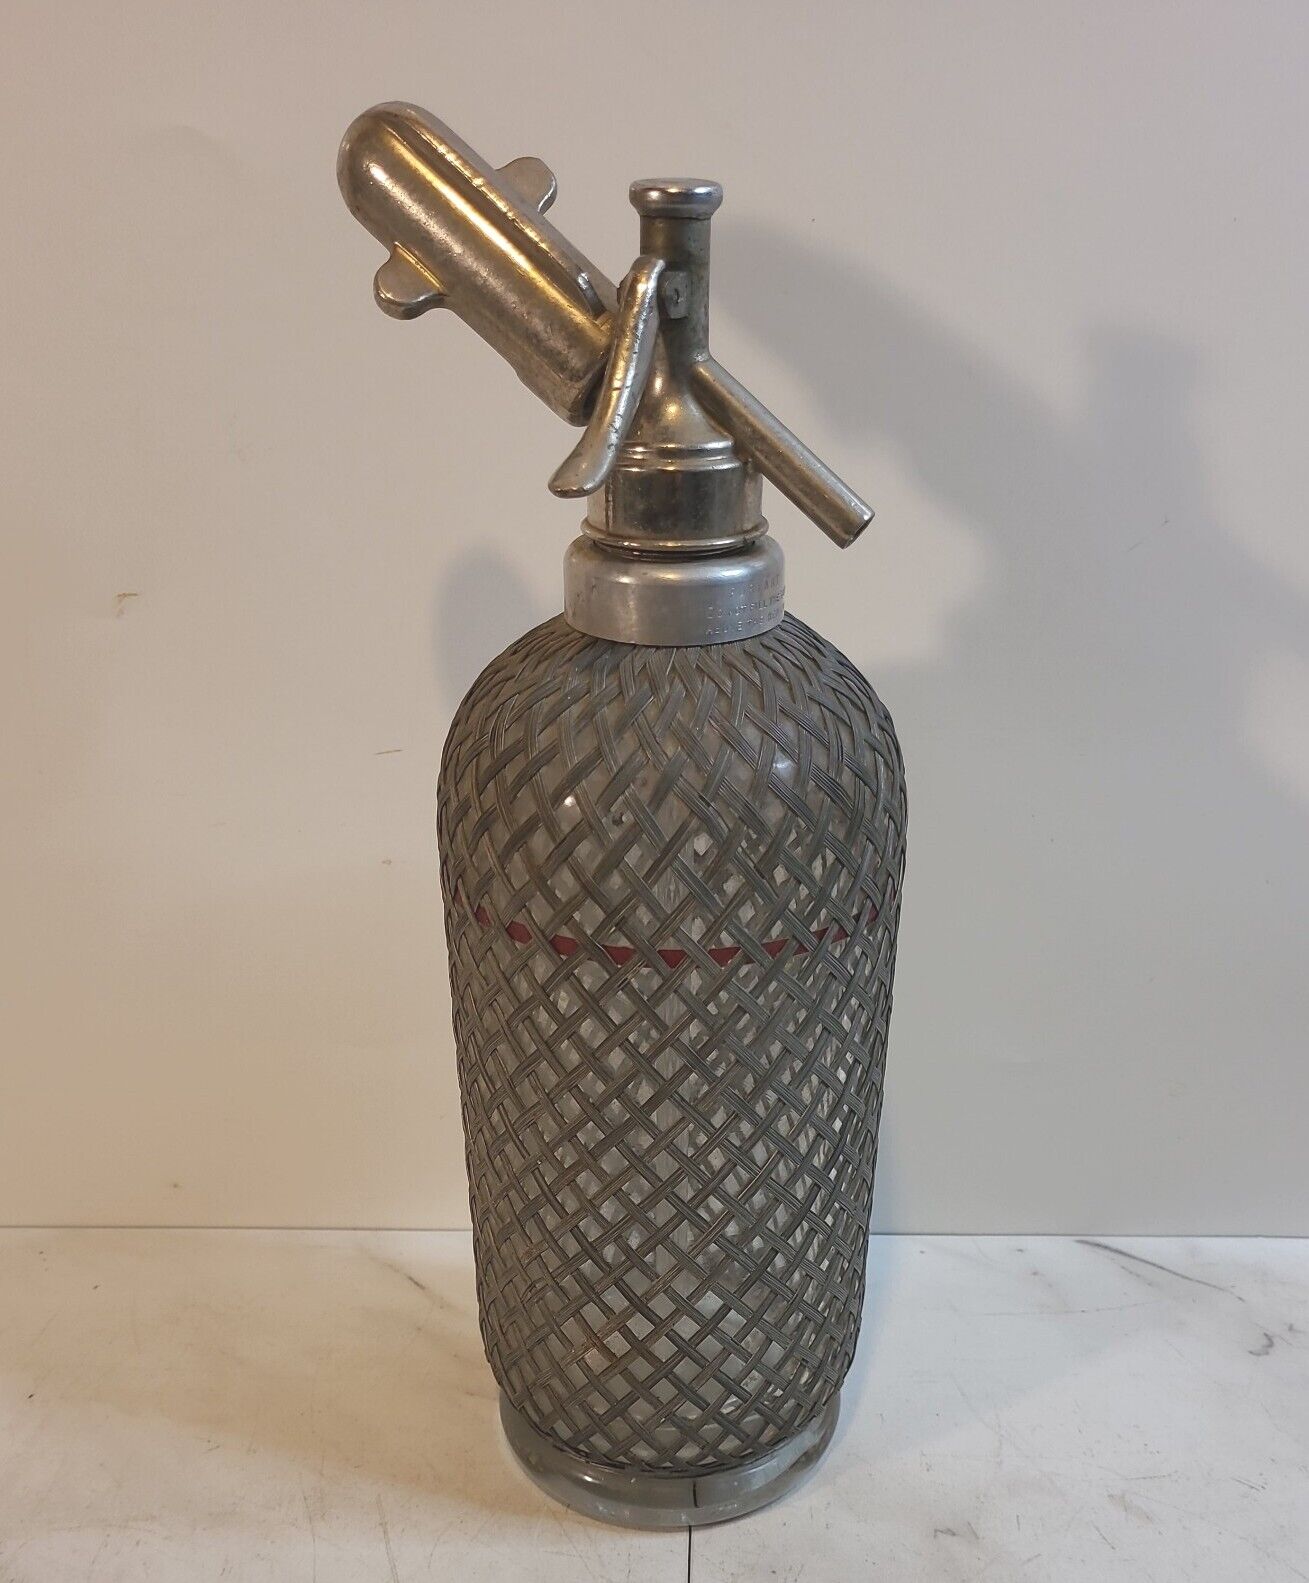 Vintage Aerators Makers Ltd. London Siphon Seltzer Bottle W/ Metal Mesh Cover